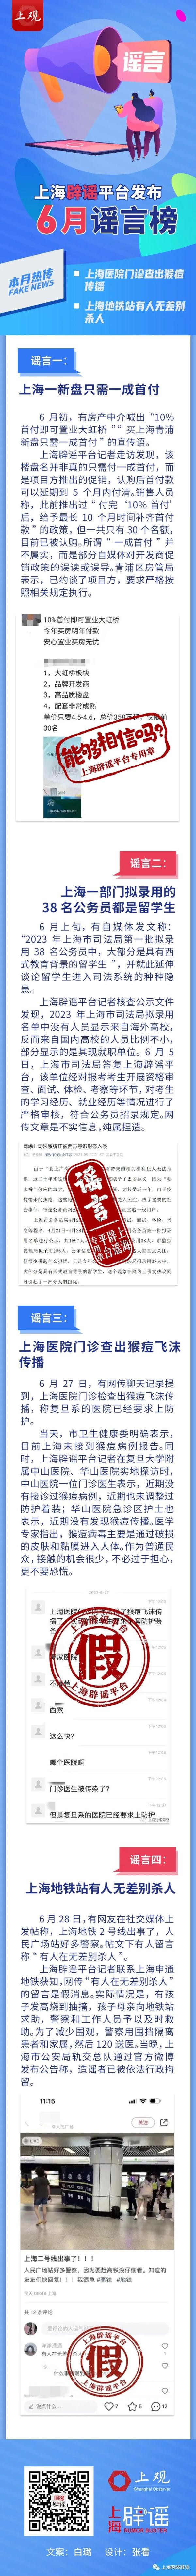 上海辟谣平台发布6月谣言榜